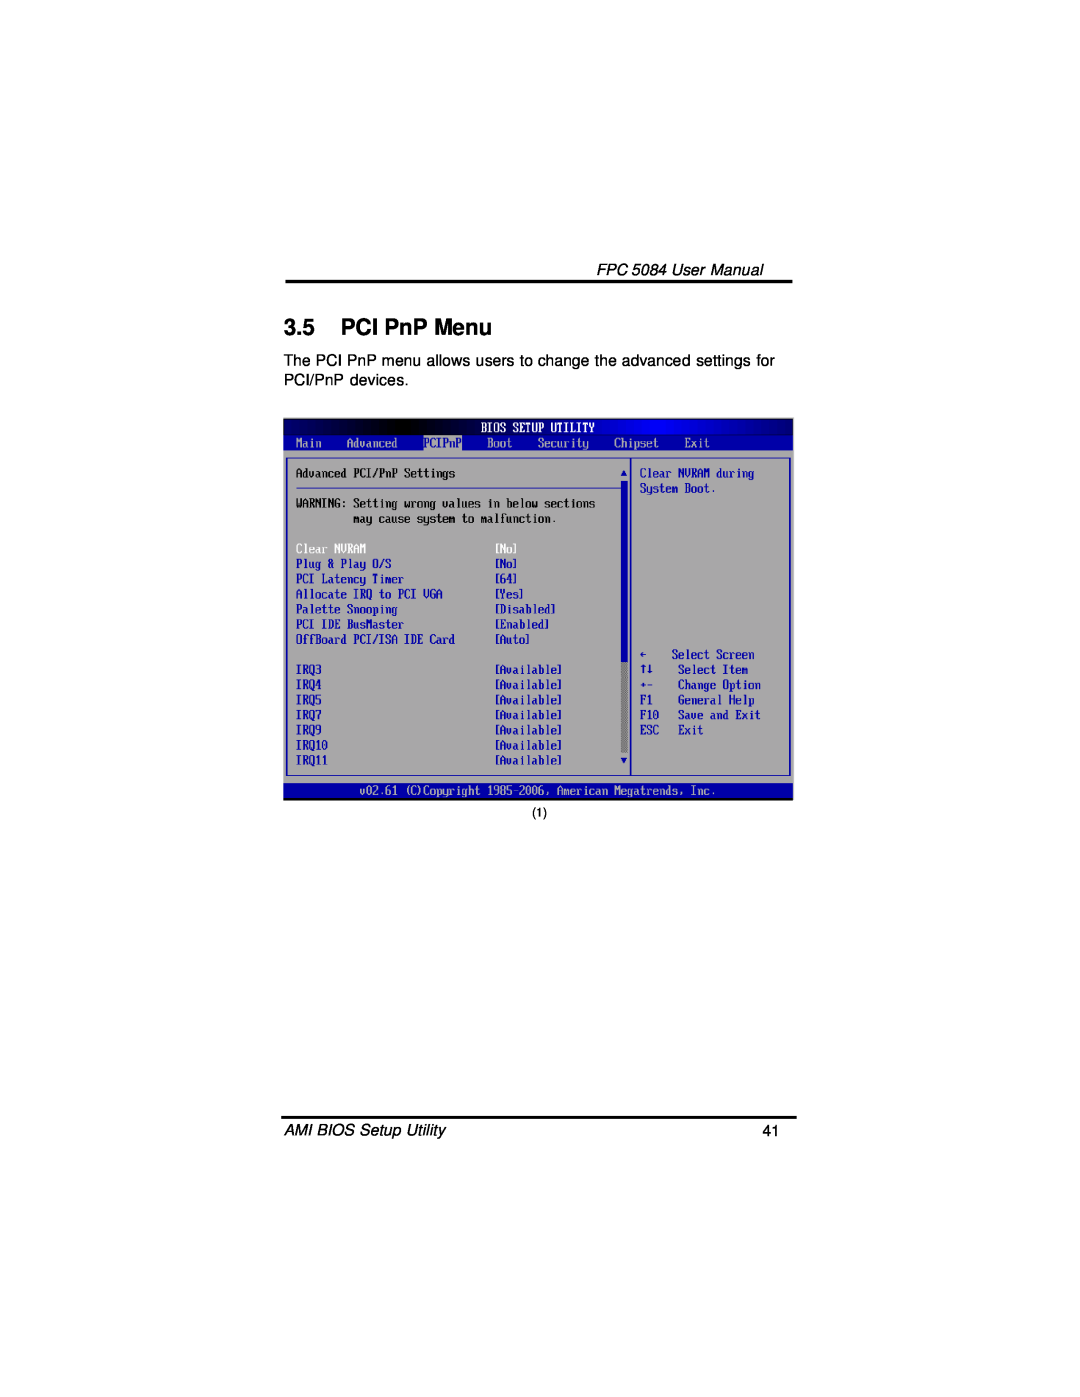 Intel N270, FPC 5084 user manual PCI PnP Menu 